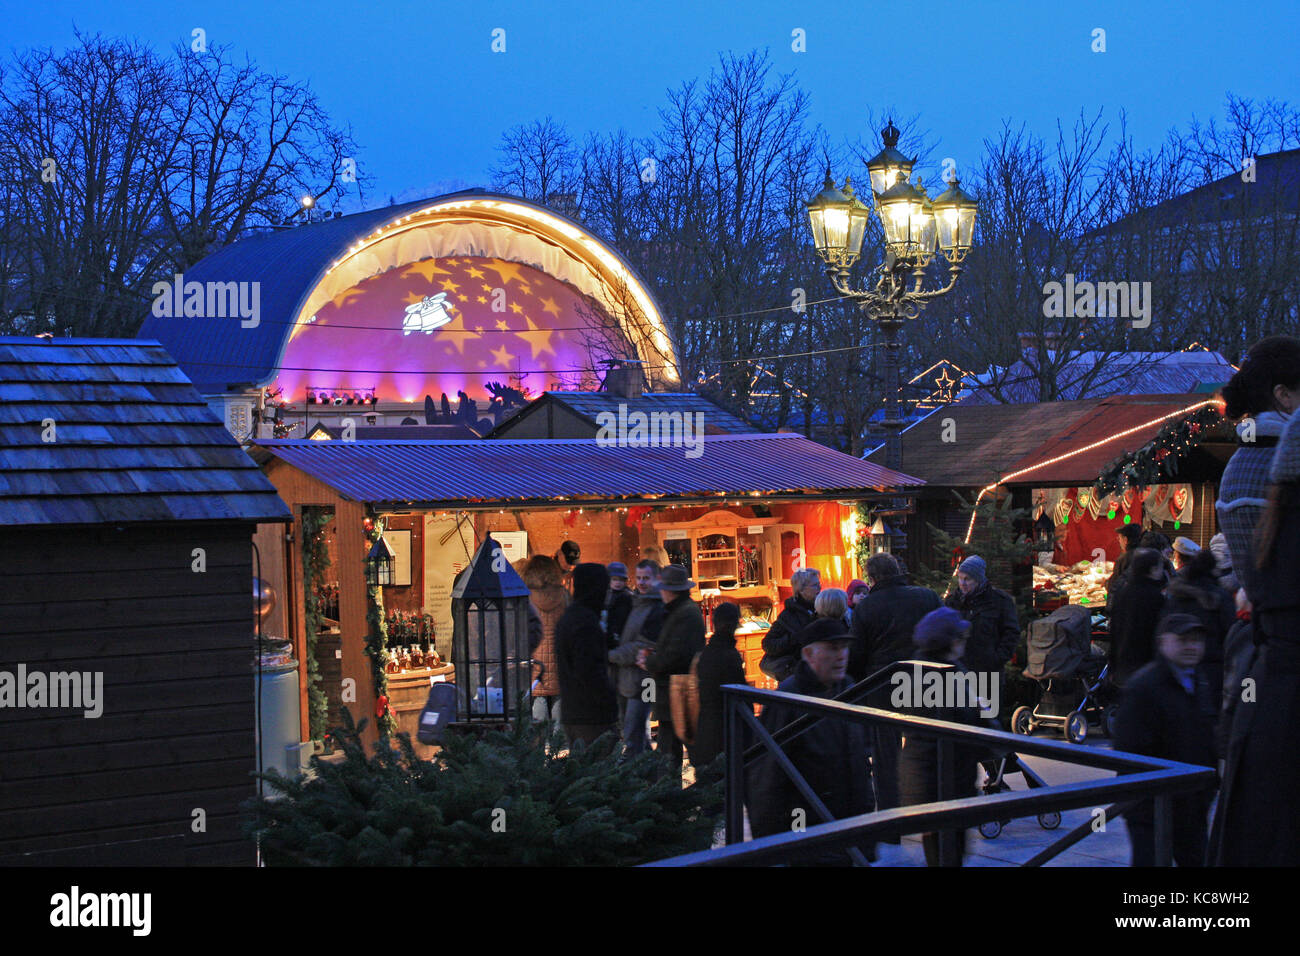 Weihnachtsmarkt, Christkindelsmarkt Baden-Baden Stock Photo